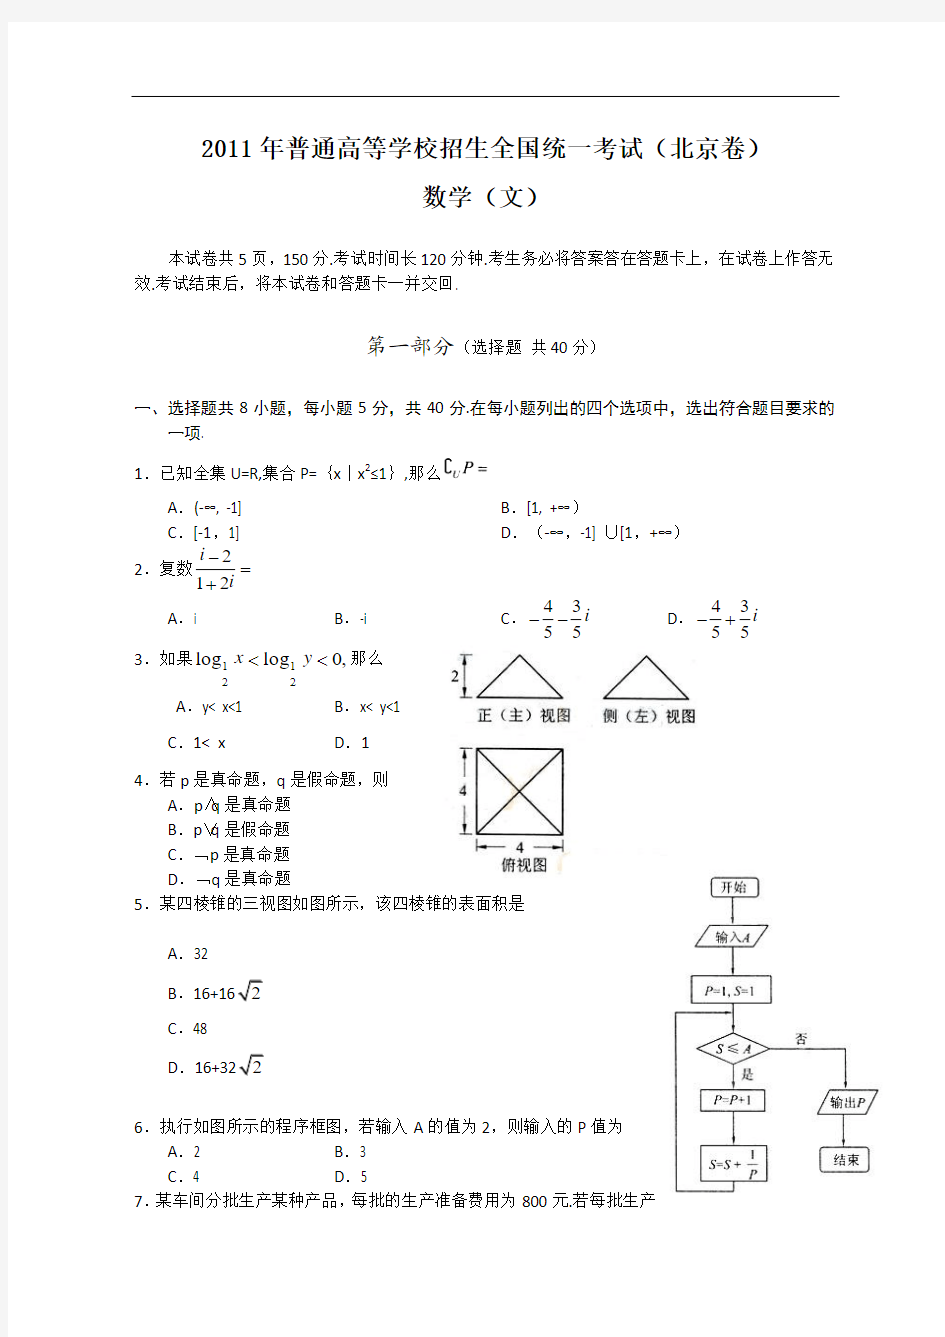 2011年全国高考文科数学试题及答案-北京